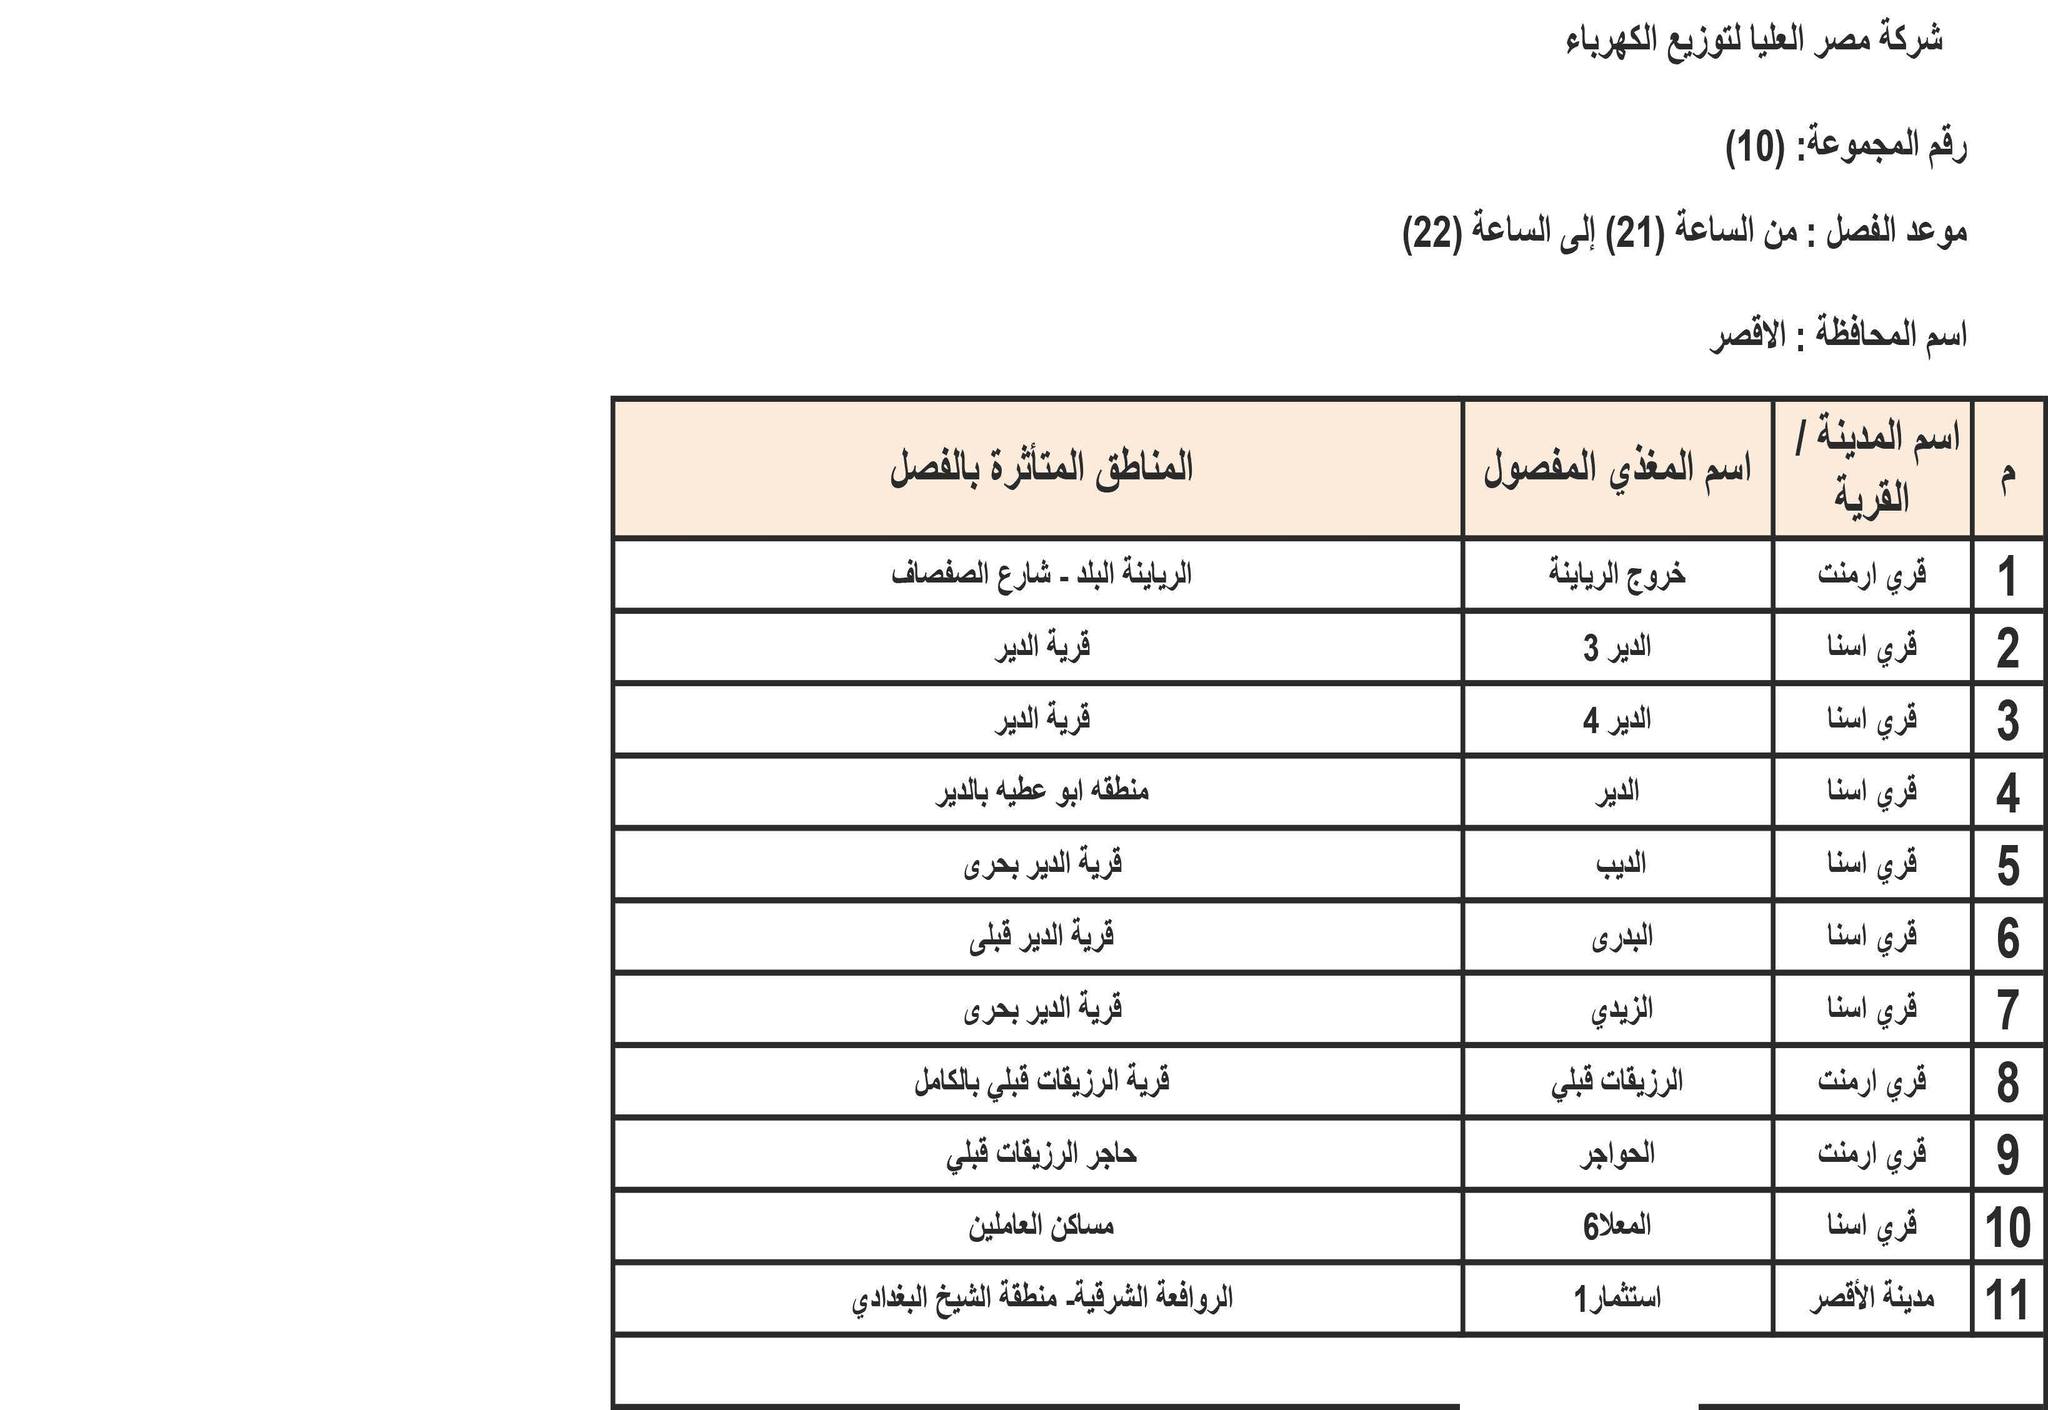 الإعلان عن خطة تخفيف أحمال الكهرباء في محافظة الأقصر 4